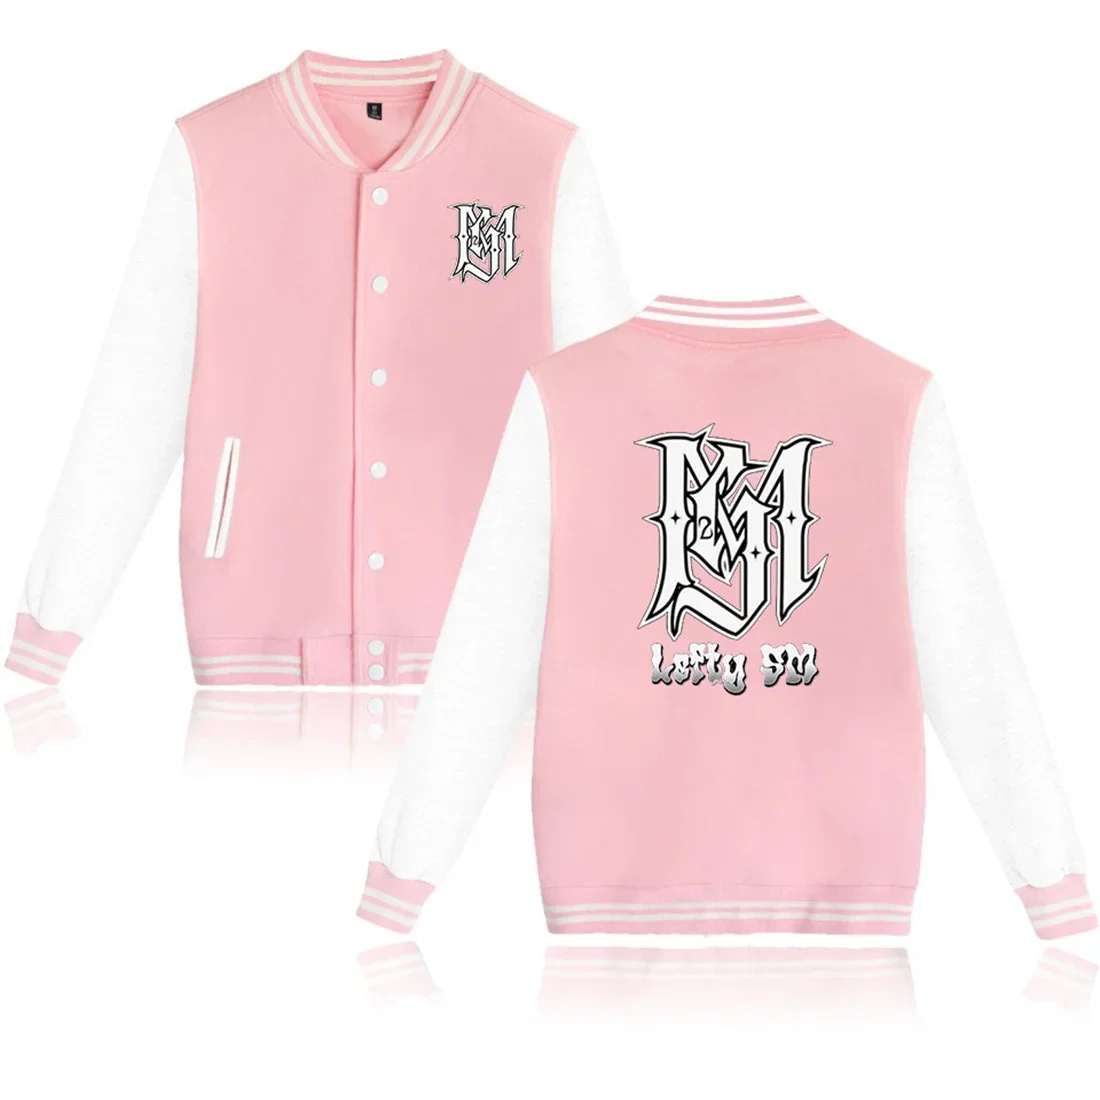 

Rapper Lefty Sm Baseball Uniform Fleece Jacket Women Men Streetwear Hip Hop Long Sleeve Pink Hoodie Sweatshirts